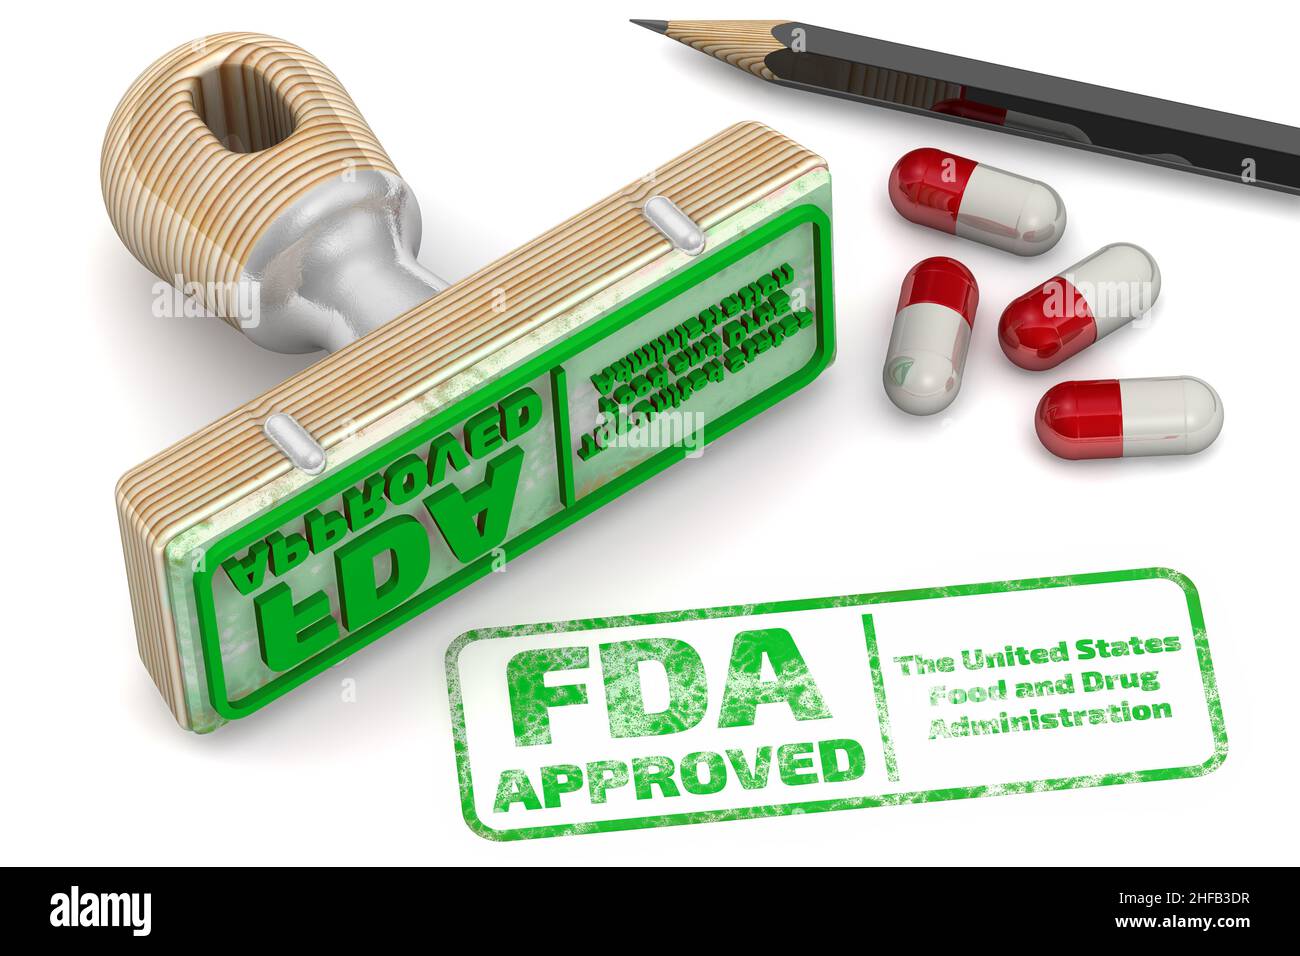 Grüner Stempel und ein von der FDA ZUGELASSENER Aufdruck auf weißer Oberfläche. Die FDA - U.S. Food and Drug Administration ist eine Bundesbehörde des US-Gesundheitsministeriums Stockfoto